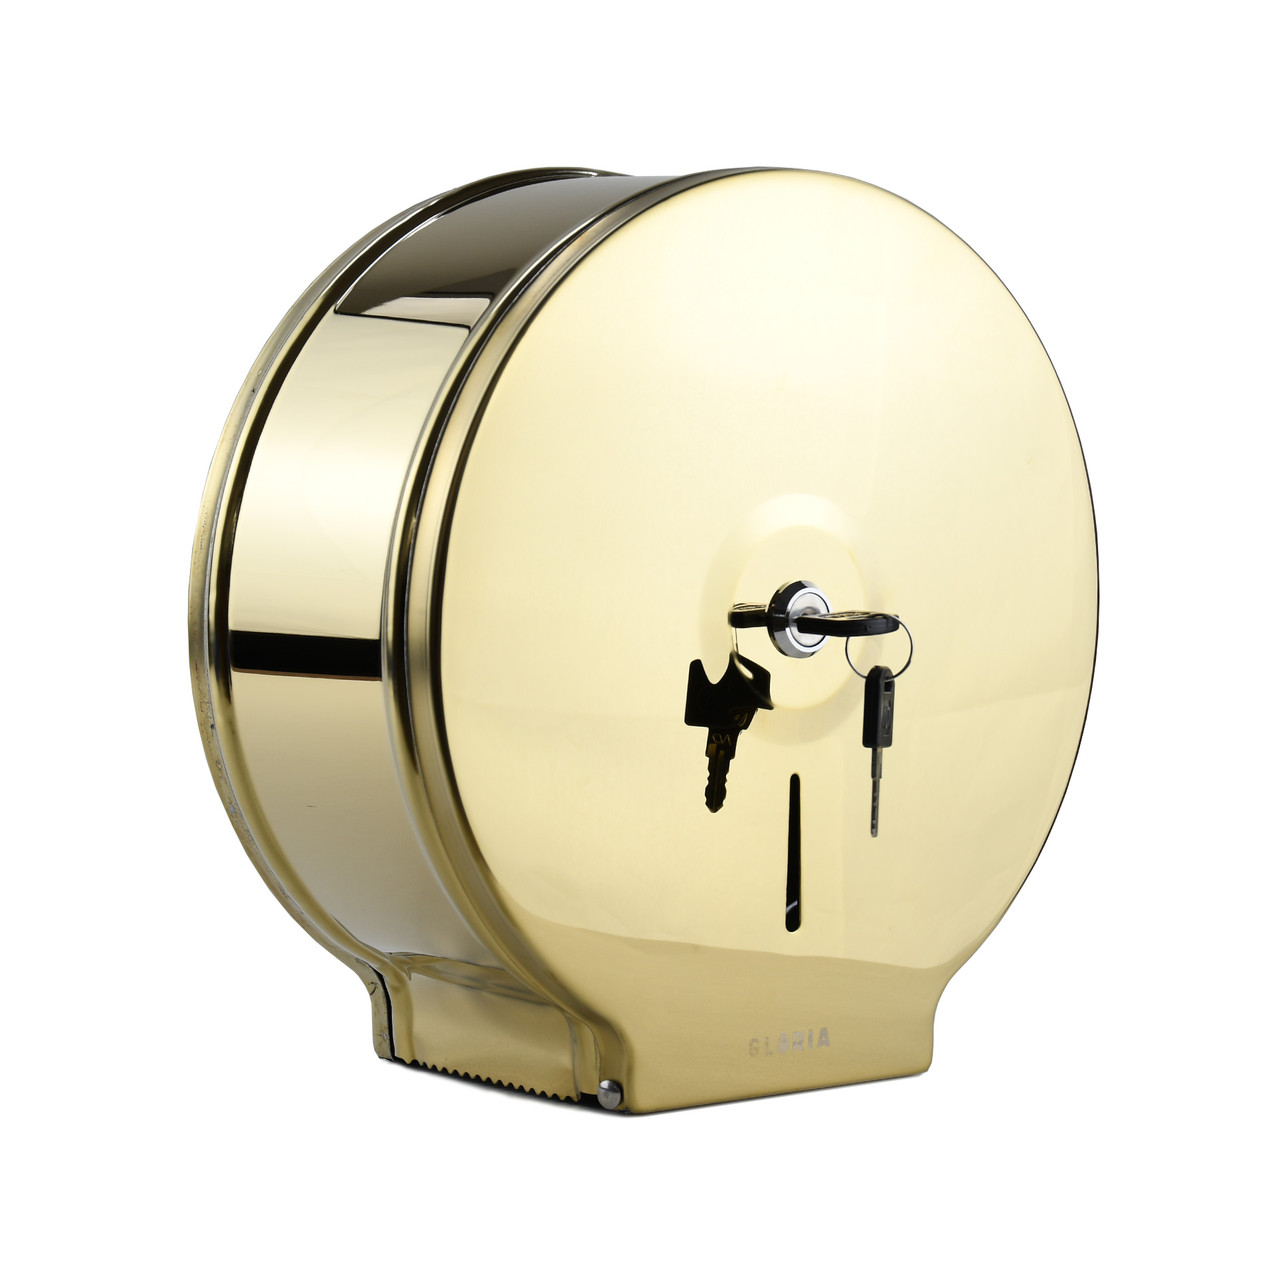 GL337 Диспенсер для туалетной бумаги (Джамбо)  металлический, антивандальный с универсальной втулкой,